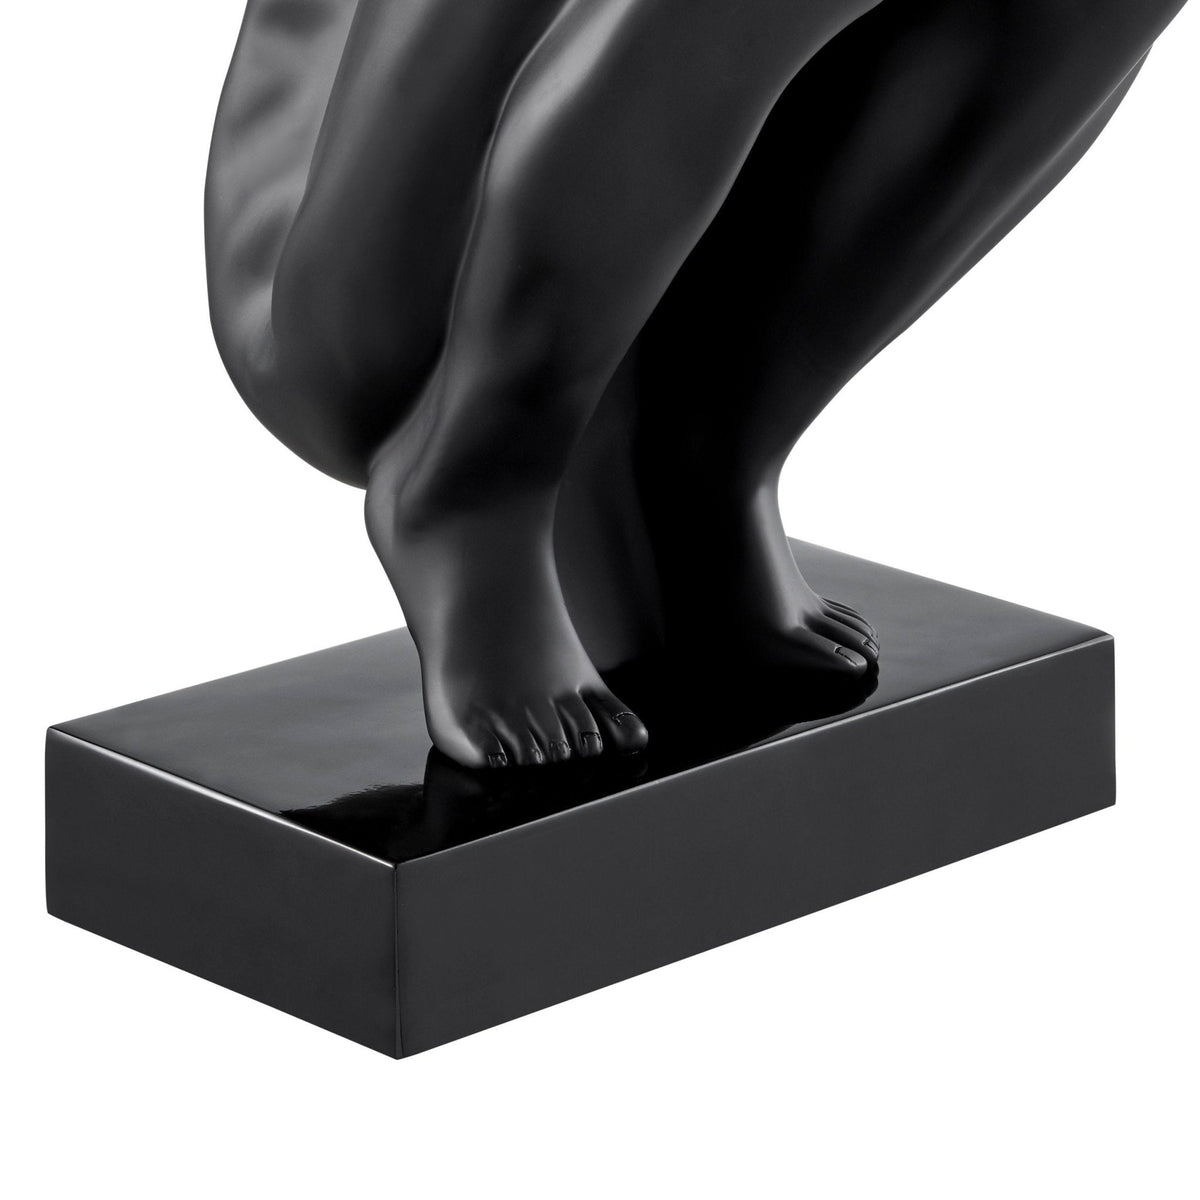 Saluting Man Modern Sculpture Large Size / Black